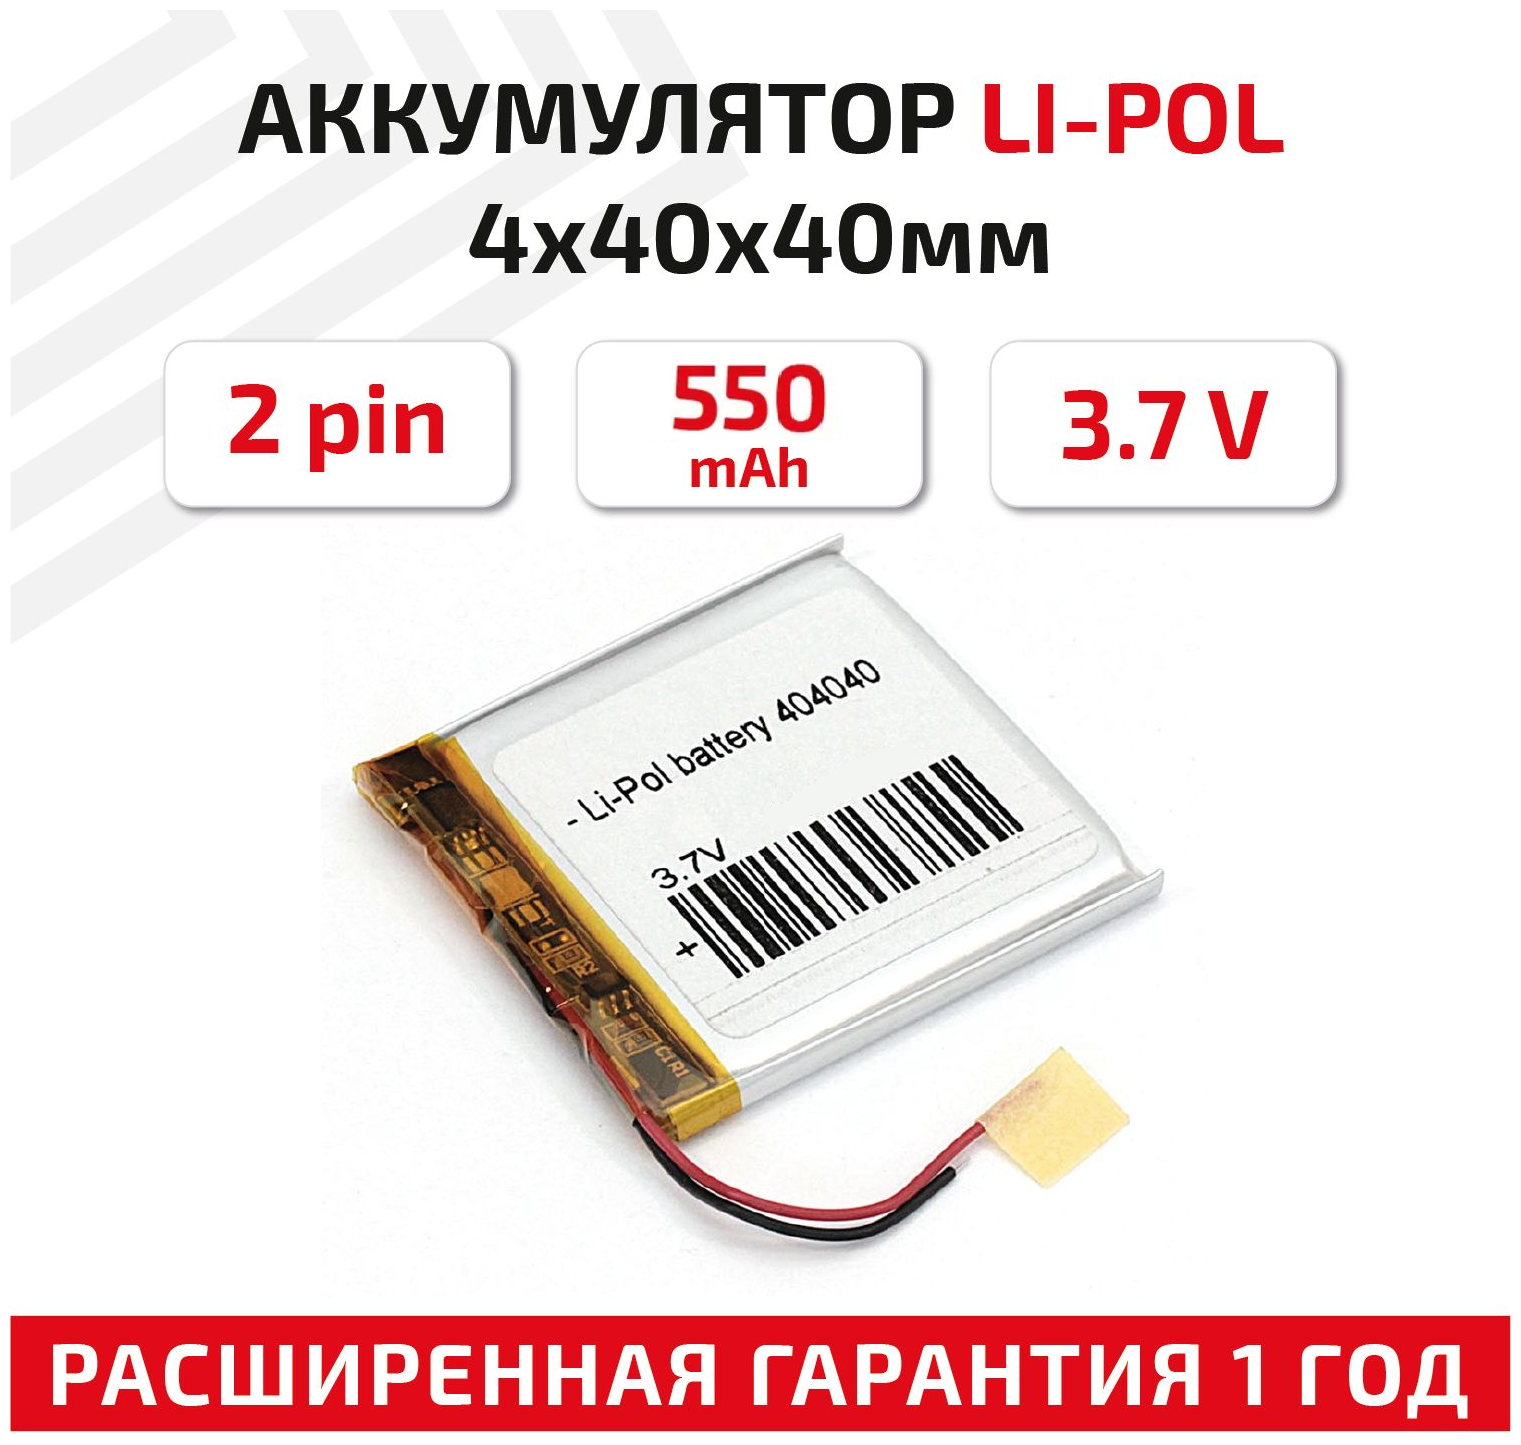 Универсальный аккумулятор (АКБ) для планшета, видеорегистратора и др, 4х40х40мм, 550мАч, 3.7В, Li-Pol, 2pin (на 2 провода)